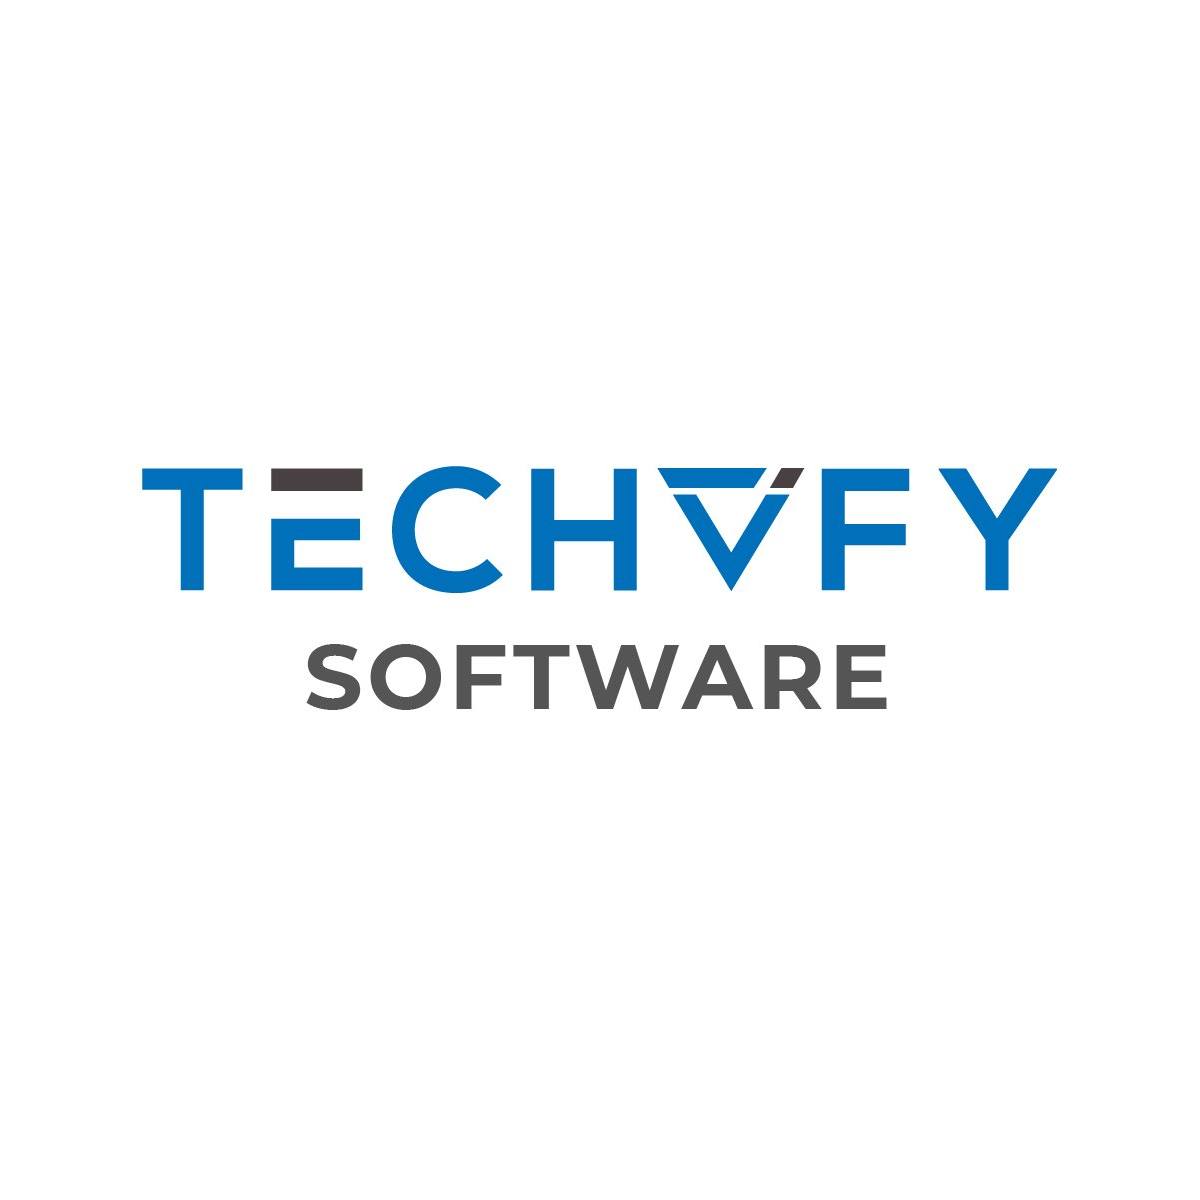 TECHVIFY Software